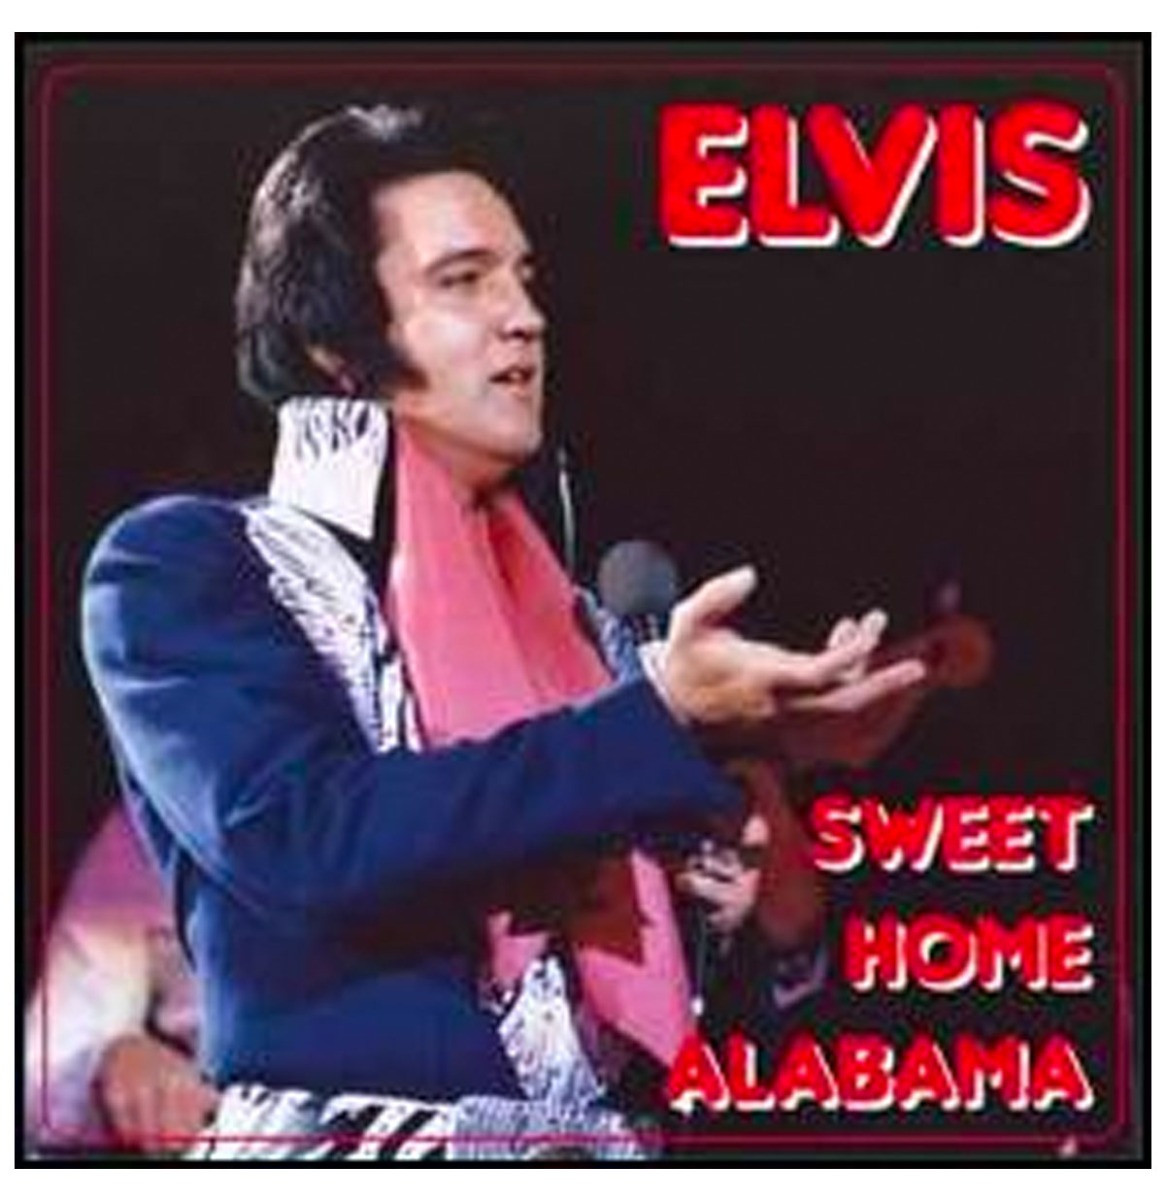 Elvis Presley - Sweet Home Alabama June 1975 2-CD